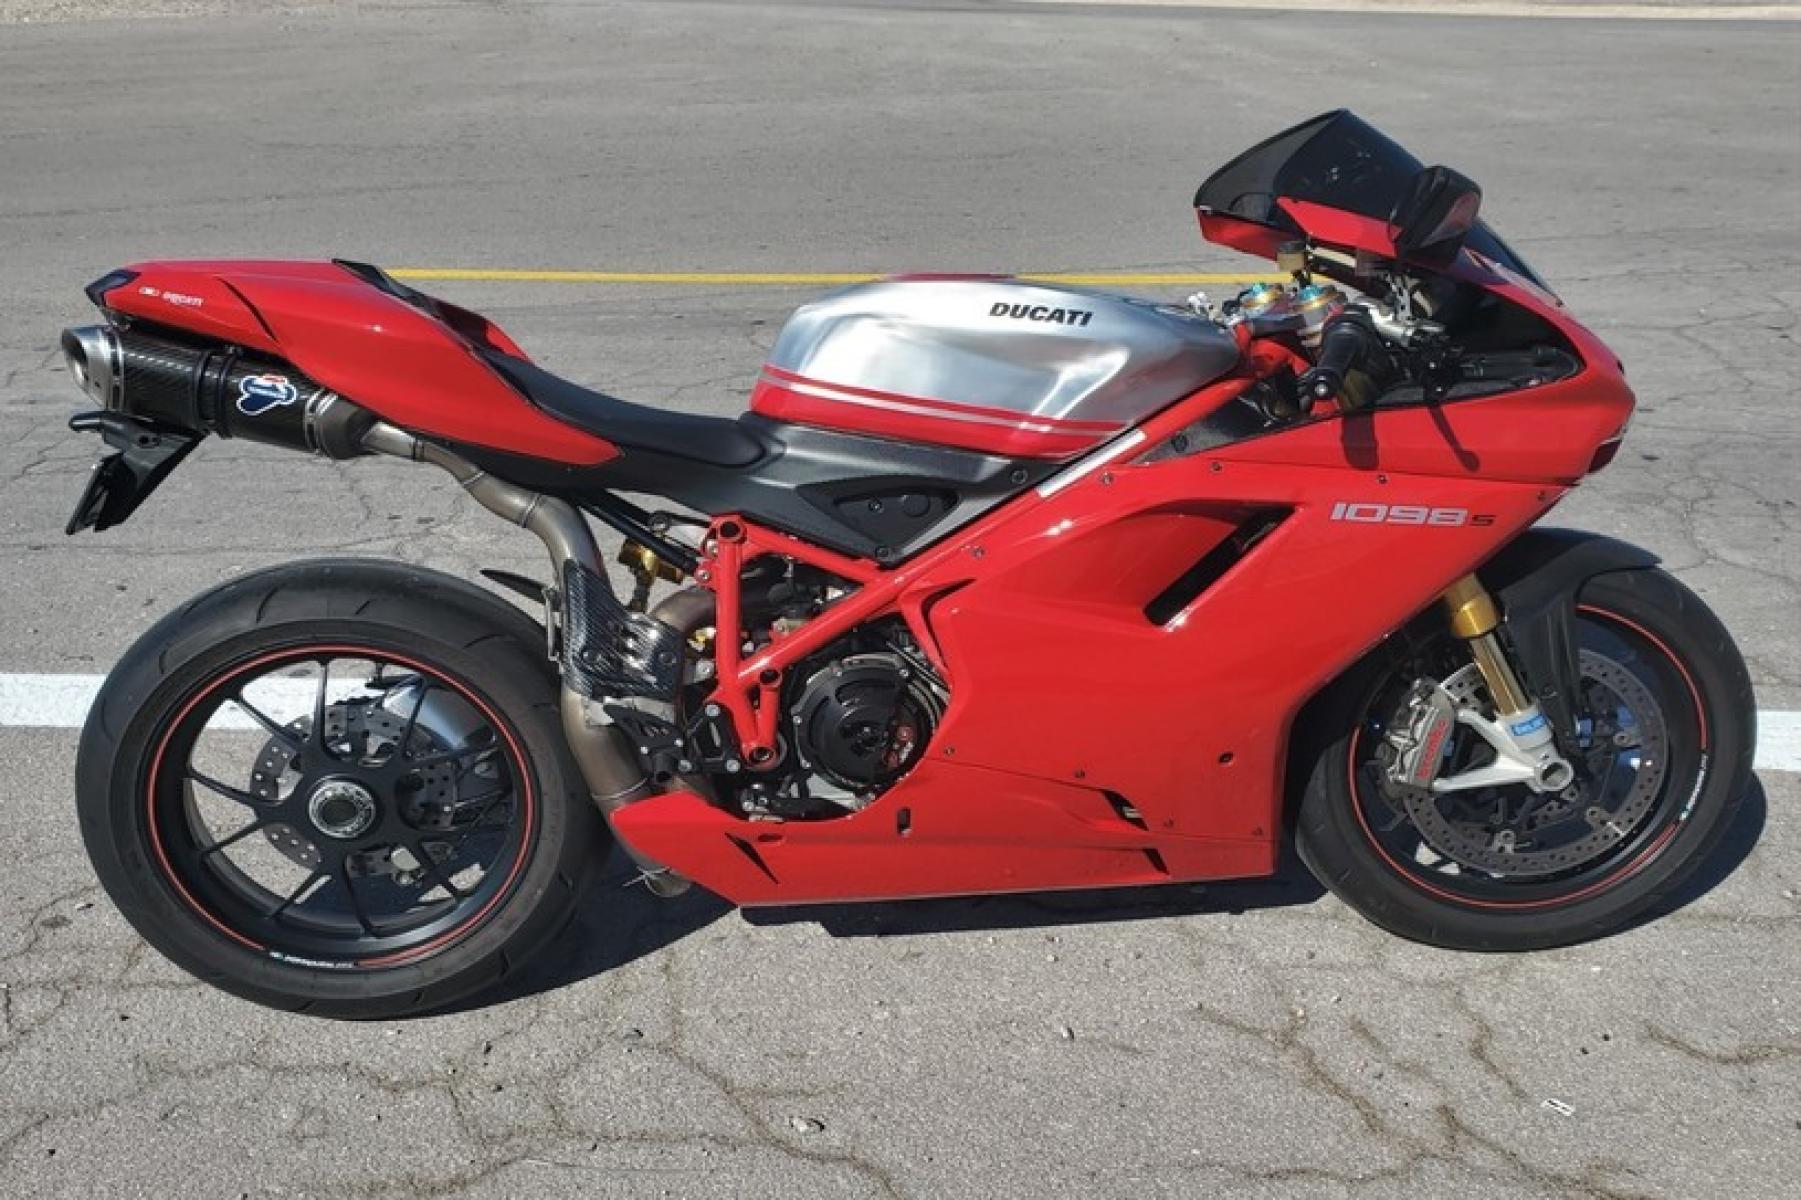 2008 Ducati 1099 S S (ZDM1XBEW18B) with an 1,098 cc L twin engine, Six-Speed Dry Clutch transmission, located at 3160 South Valley View Blvd, Las Vegas, NV, 89146, (888) 750-6845, 36.132458, -115.190247 - b64:VGhlIER1Y2F0aSAxMDk4UyBib2FzdHMgc29tZSBnb3JnZW91cyBib2R5d29yayBhbmQgc2xpY2sgZGVzaWduIGN1ZXMsIGJ1dCBpdHMgcmVhbCBtYXN0ZXJwaWVjZSBsaWVzIGJlbmVhdGggdGhvc2UgcHJldHR5IHBsYXN0aWMgcGFuZWxzLiBVbmRlcm5lYXRoIGlzIGEgdHVidWxhciBzdGVlbCB0cmVsbGlzIGZyYW1lIG9wdGltaXplZCBmb3Igc3RpZmZuZXNzLCBhbmQgYW4gTC10d2luIGVu - Photo #1